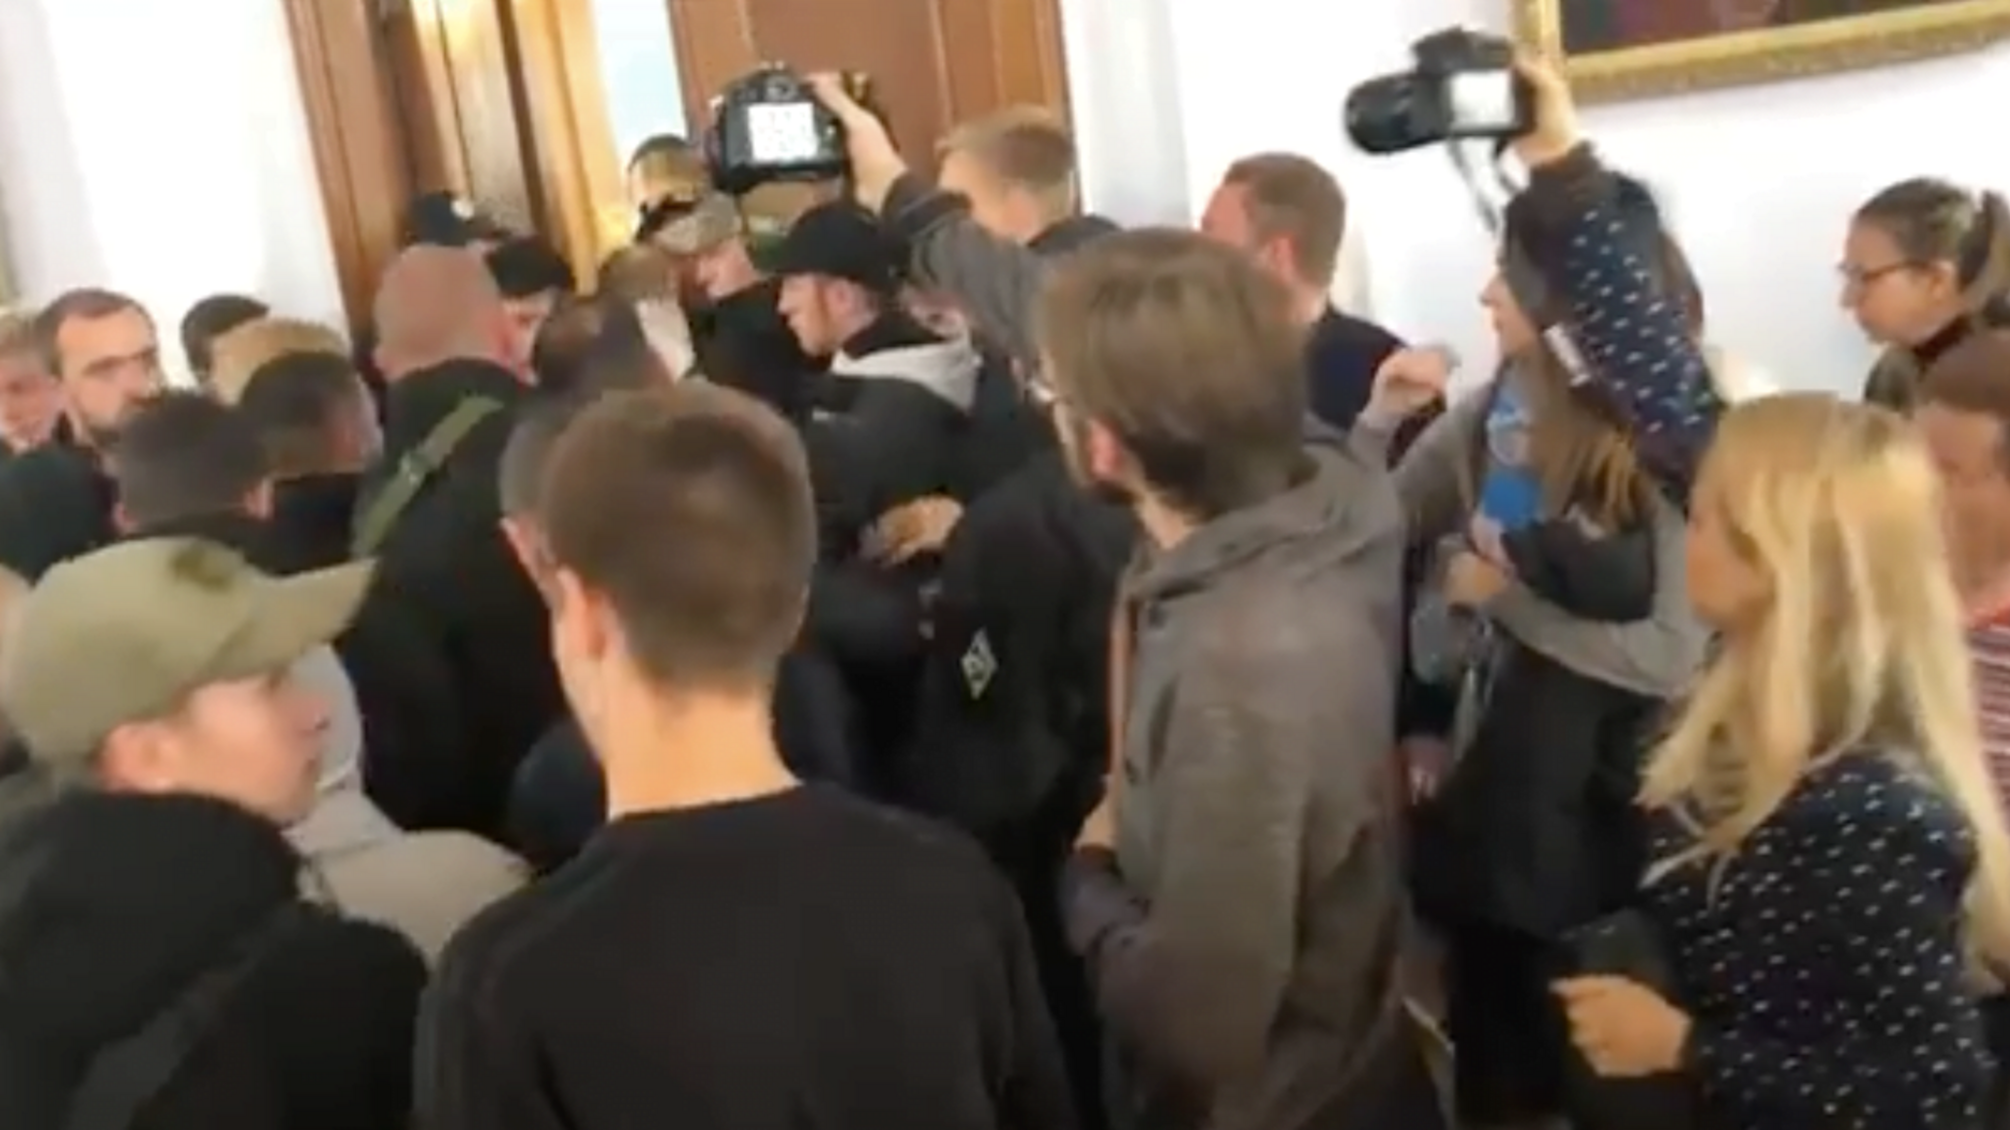 “Брудна влада” - в Миколаєві на двох депутатів вилили екскременти (ВІДЕО)